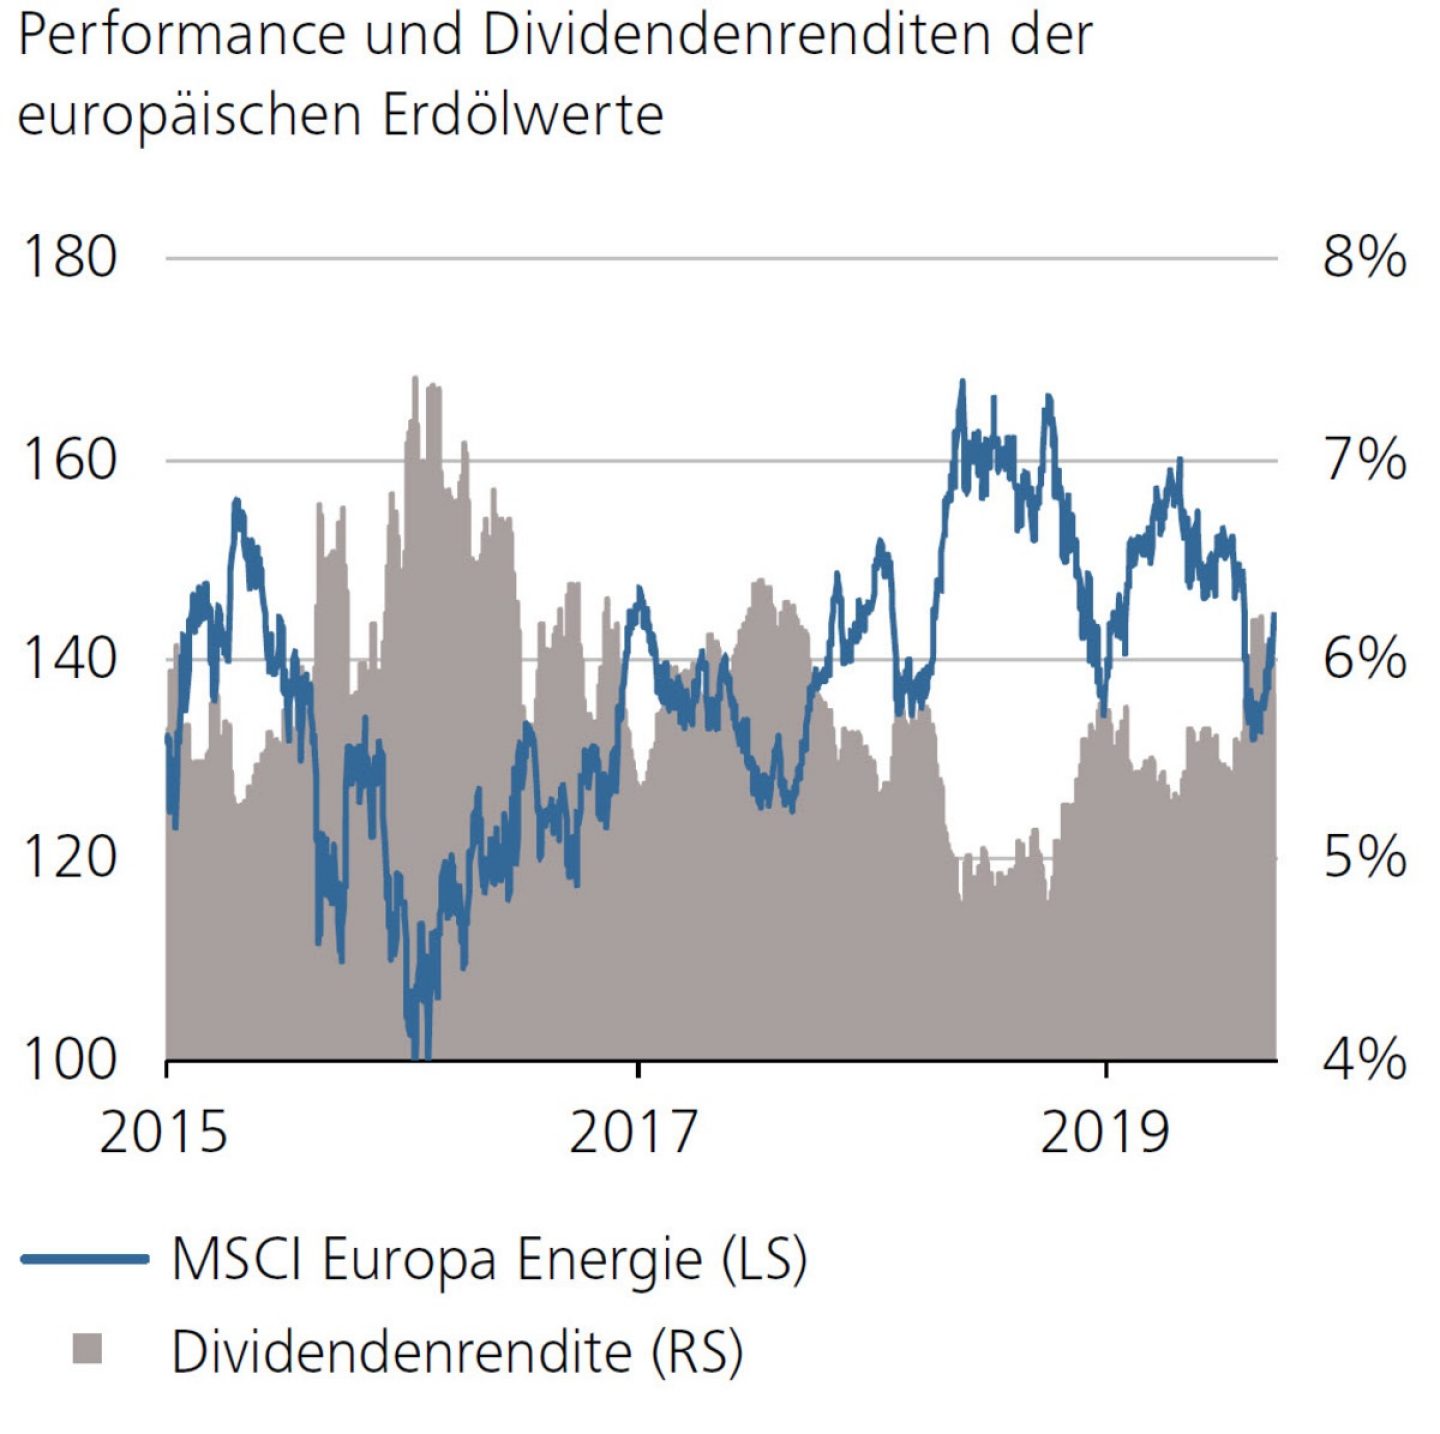 Performance und Dividendenrenditen der europäischen Erdölwerte